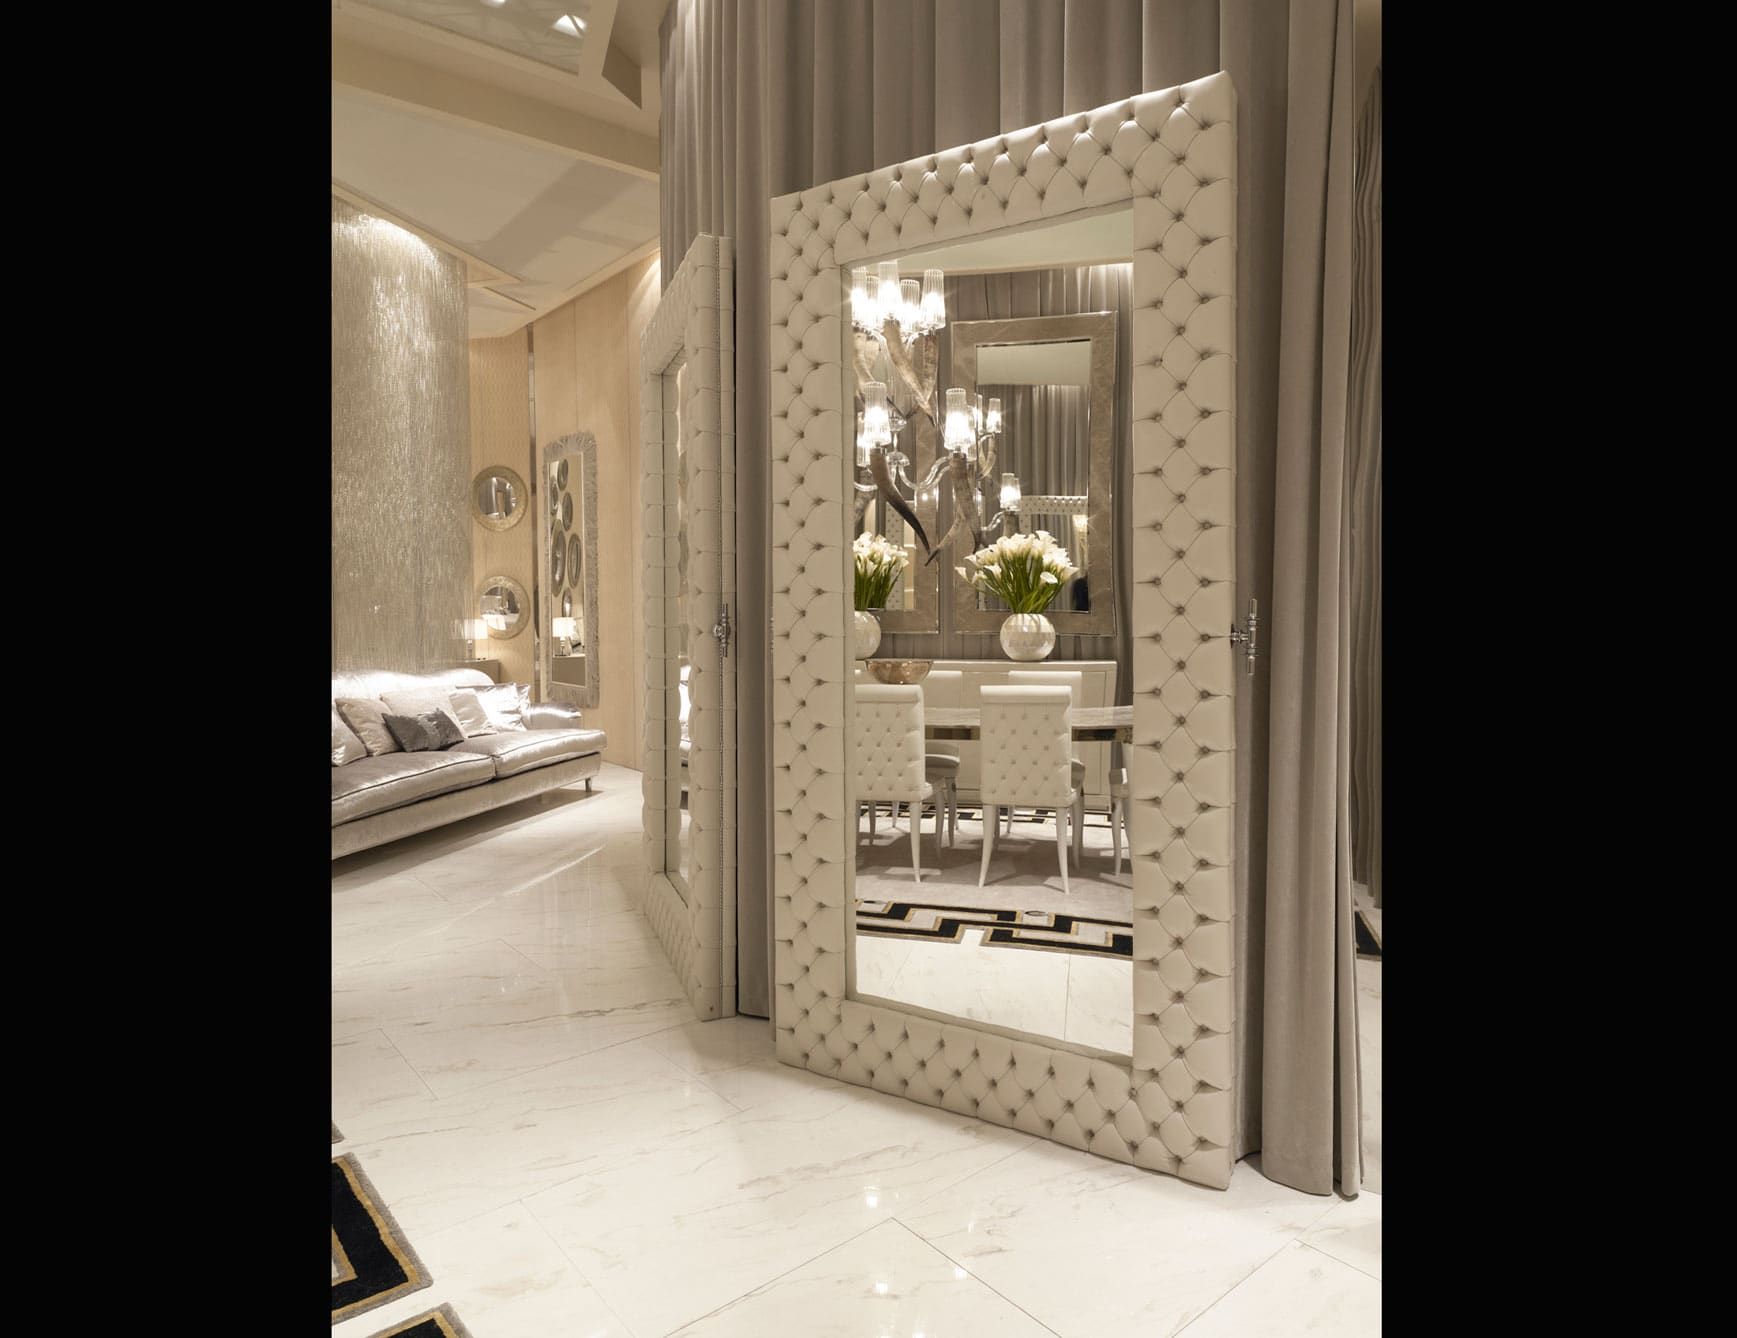 Iris modern luxury mirror with white leather